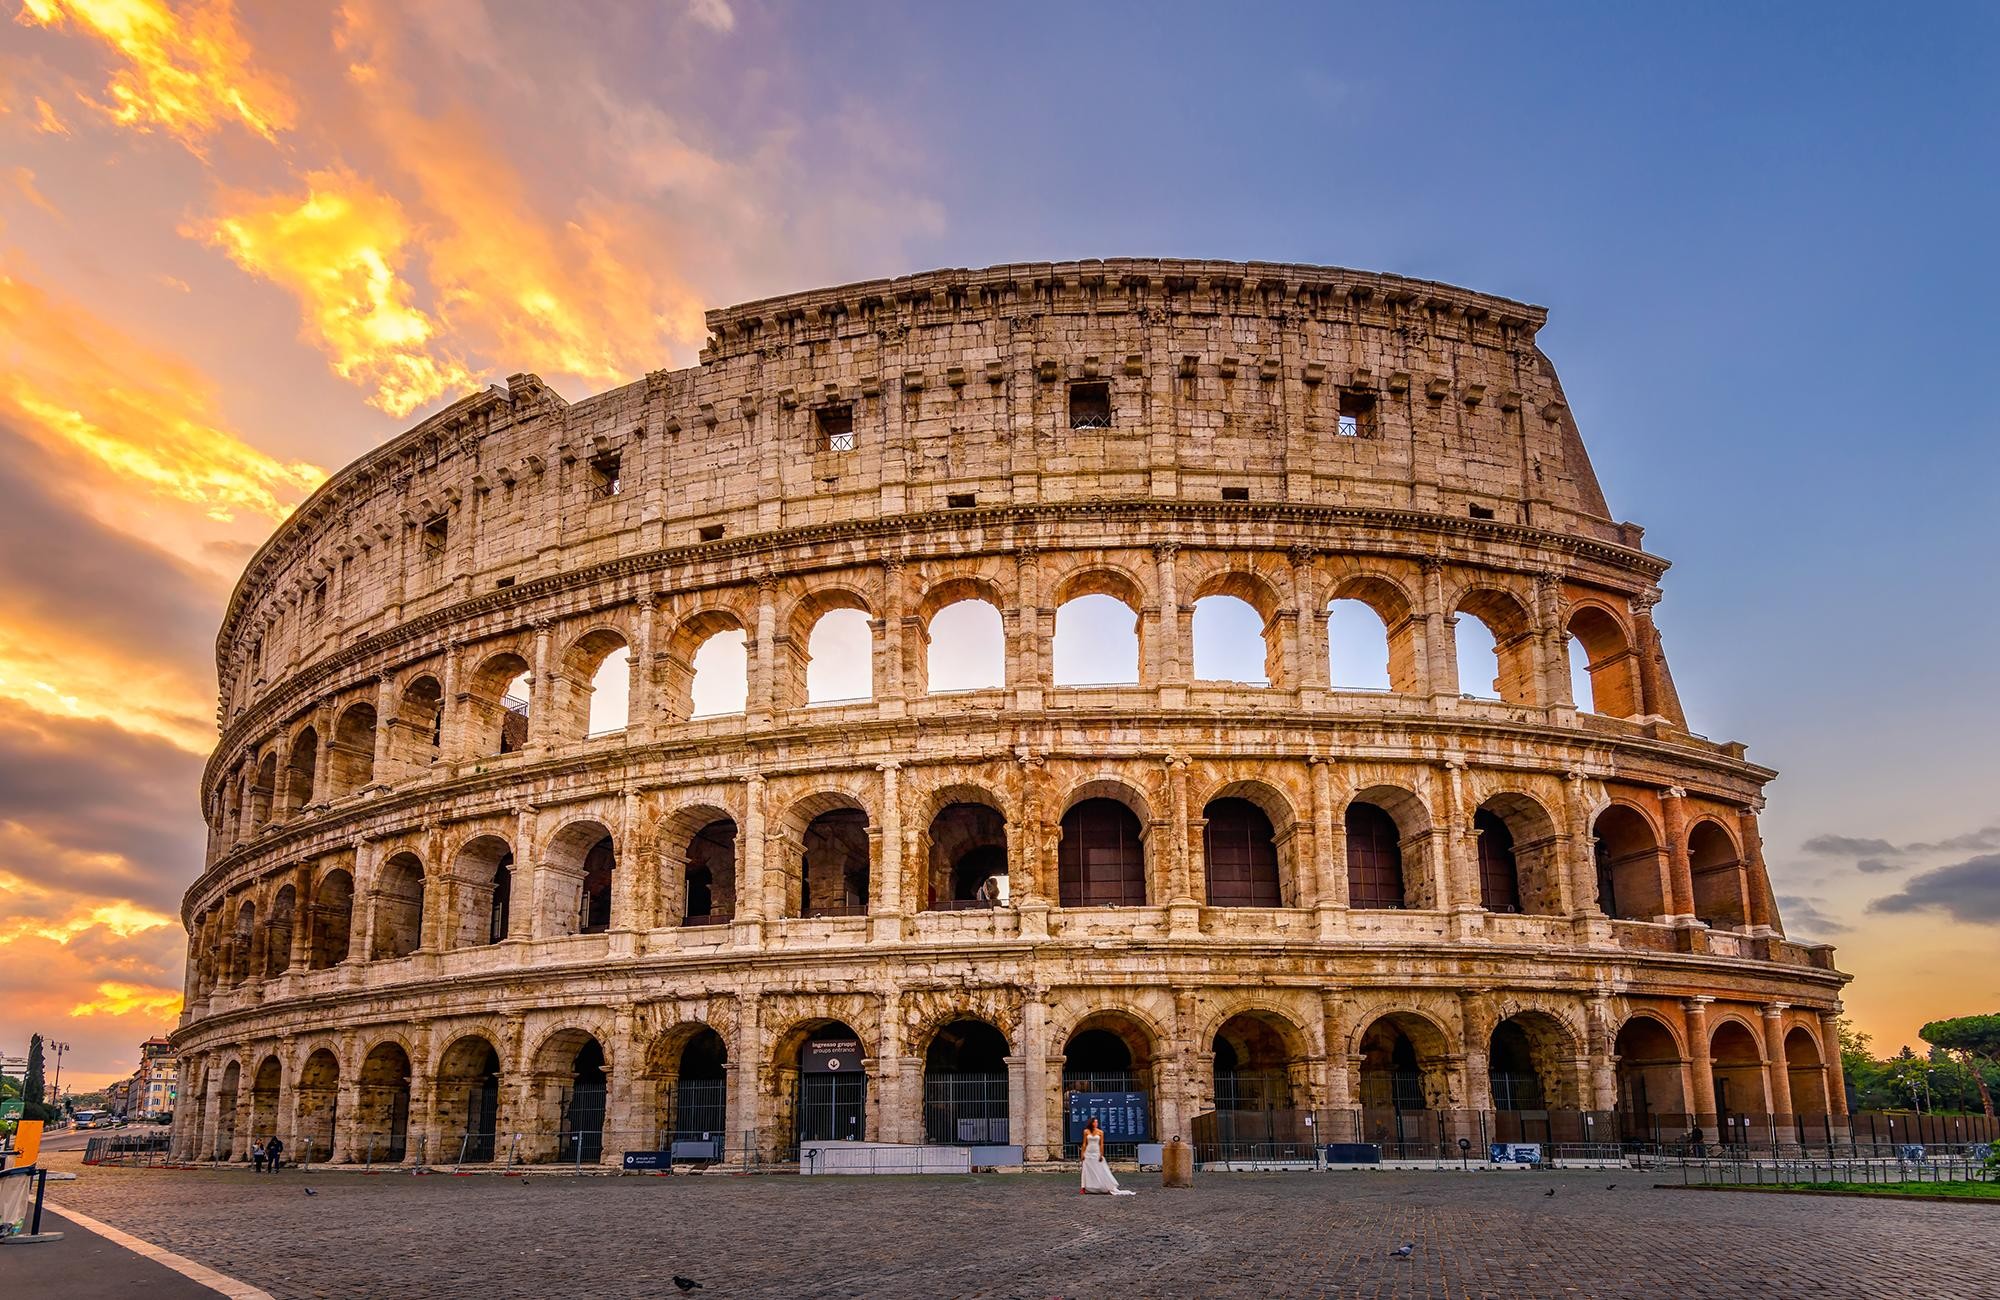 Kiến trúc cột trụ đan xen cửa vòm có thể thấy ở Đấu trường Colosseum (Rome, Italy)